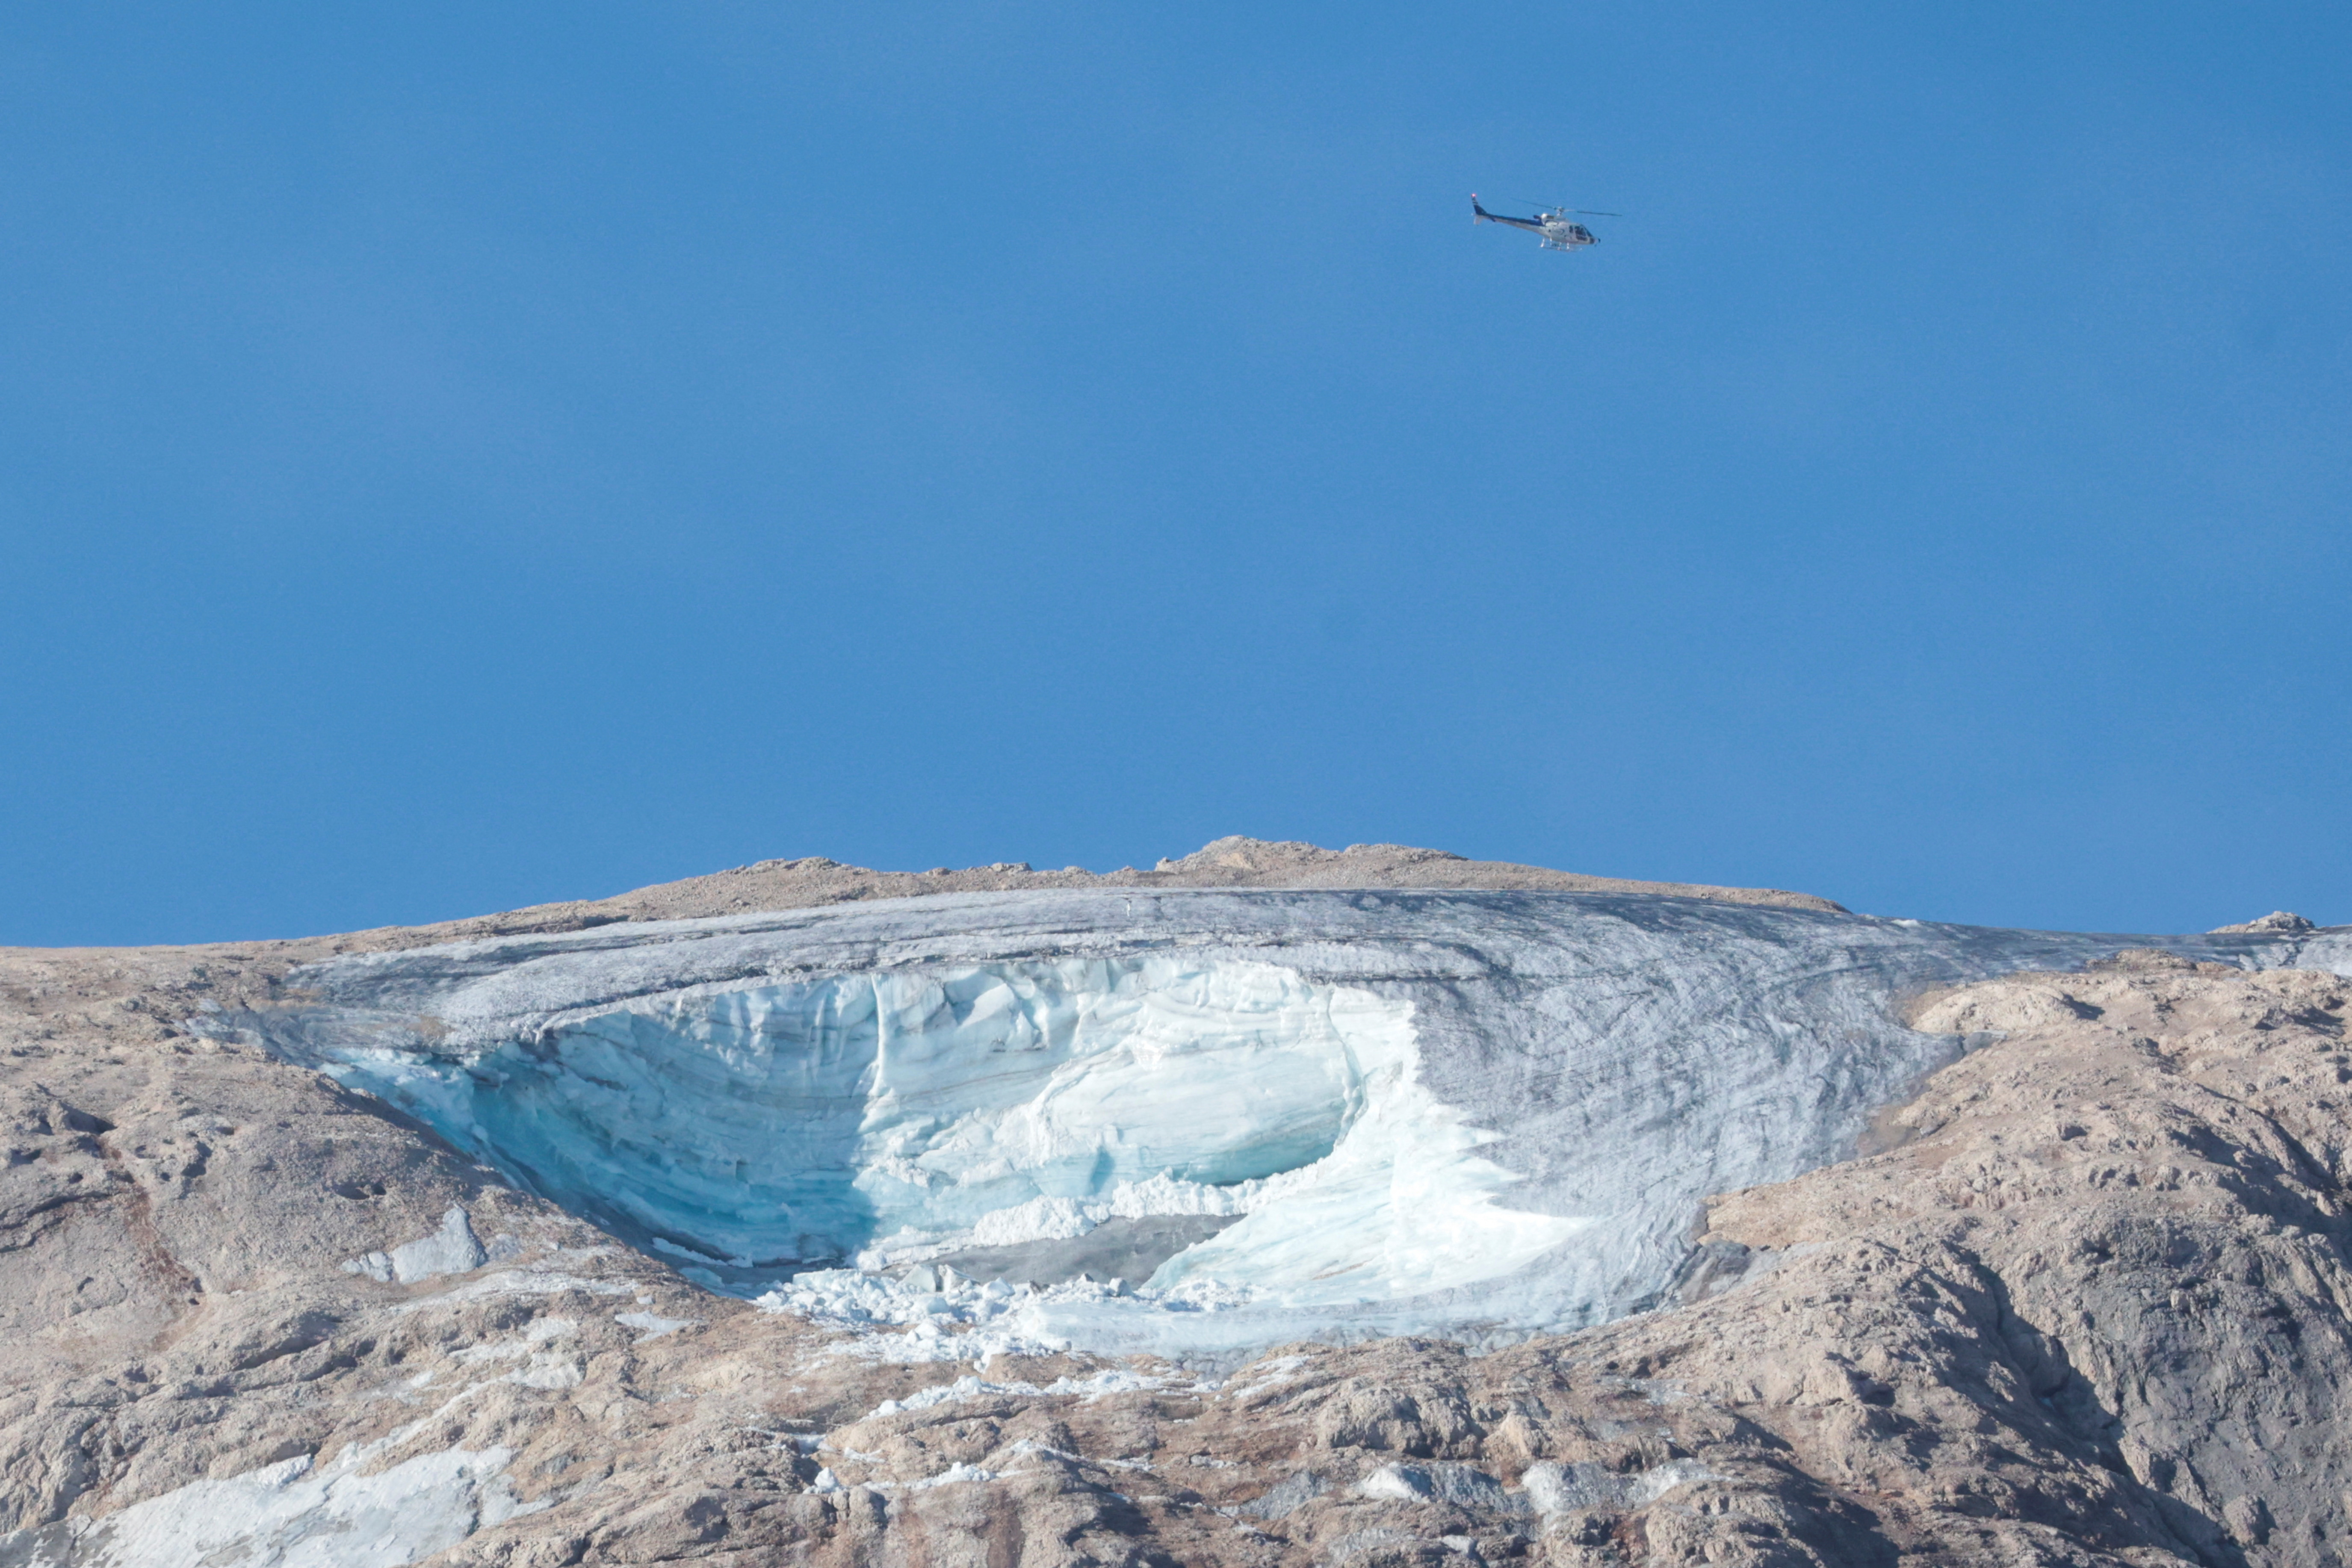 Glacier collapses near Marmolada in the Italian Alps